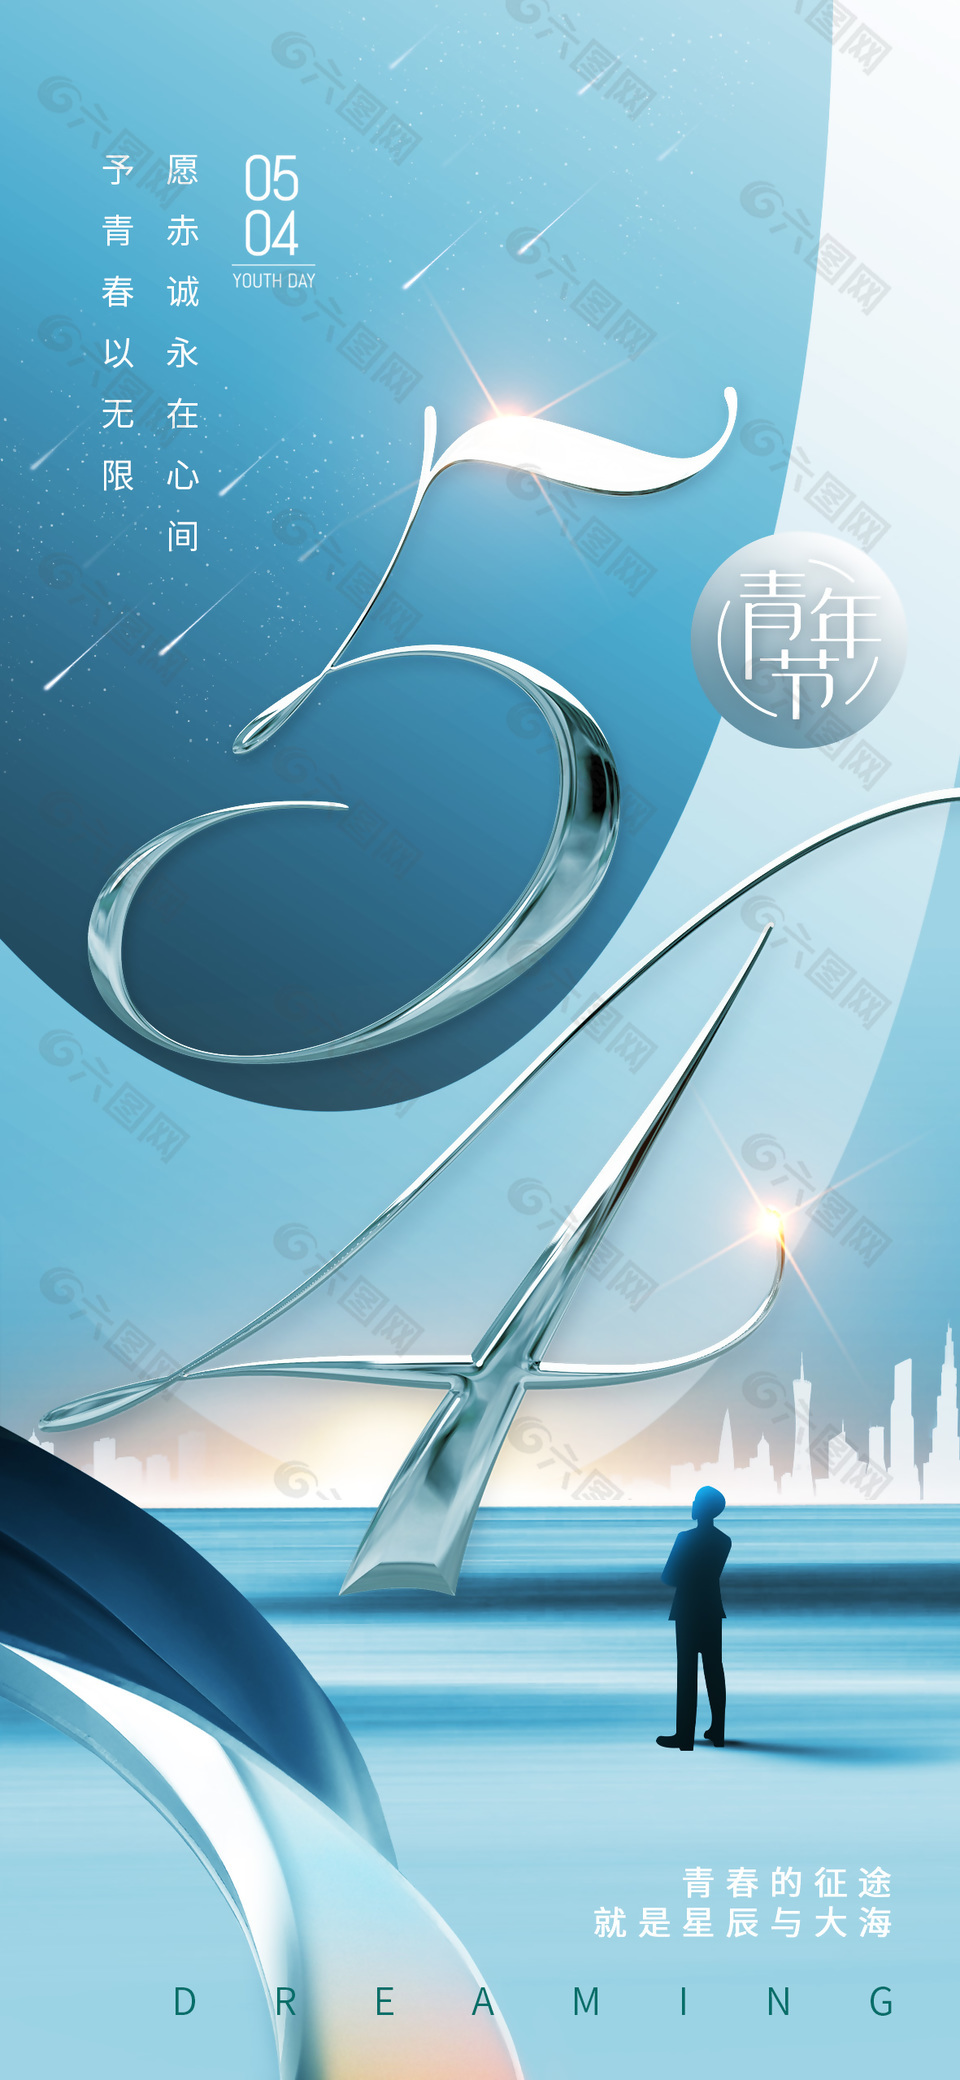 54青年节蓝色商务风手机宣传海报